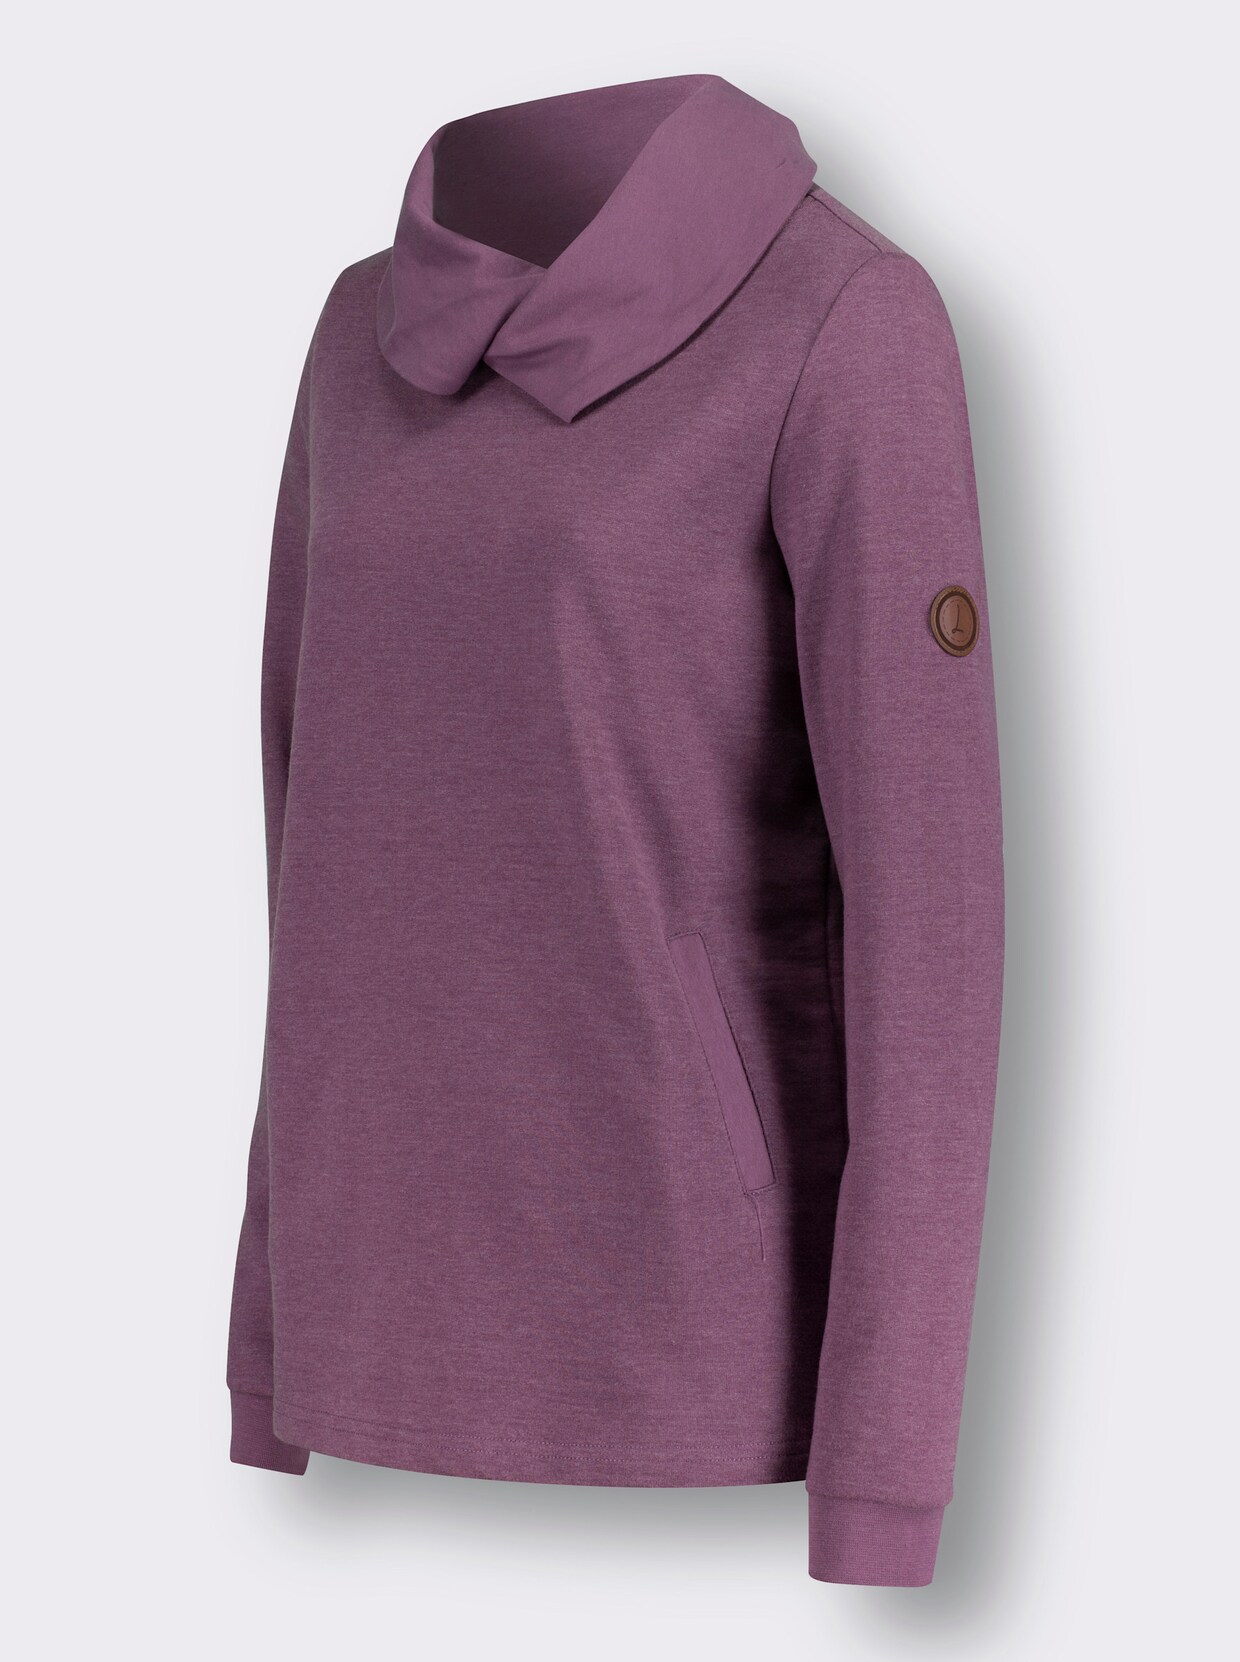 Sweatshirt - violett-weiß-meliert